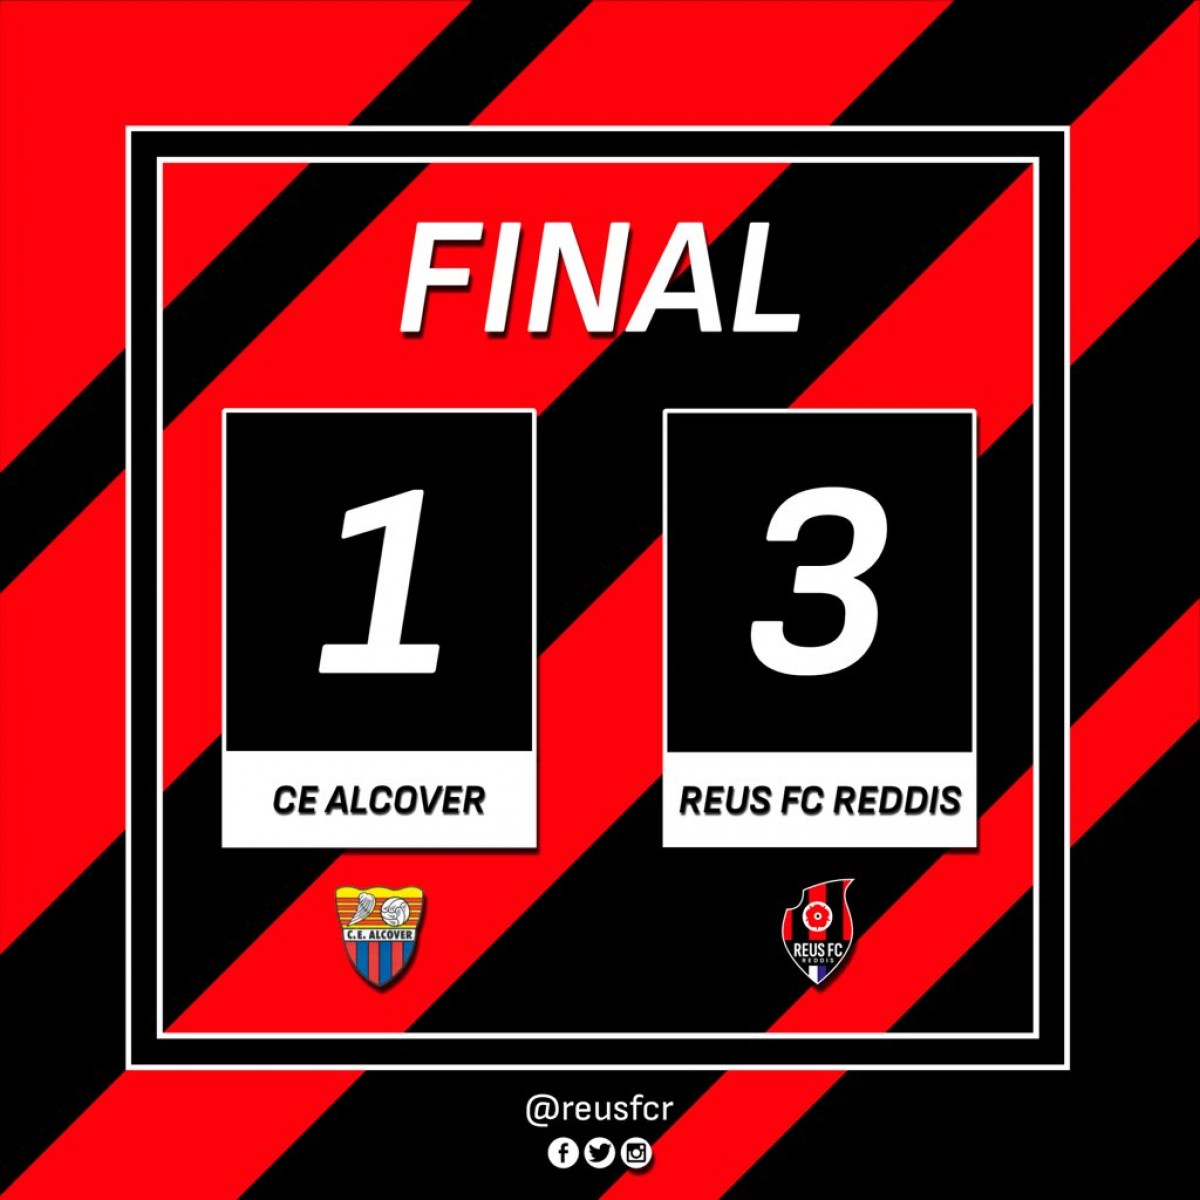 El resultat de l'amistós ha estat d'1 gol a 3, a favor del Reus FC Reddis